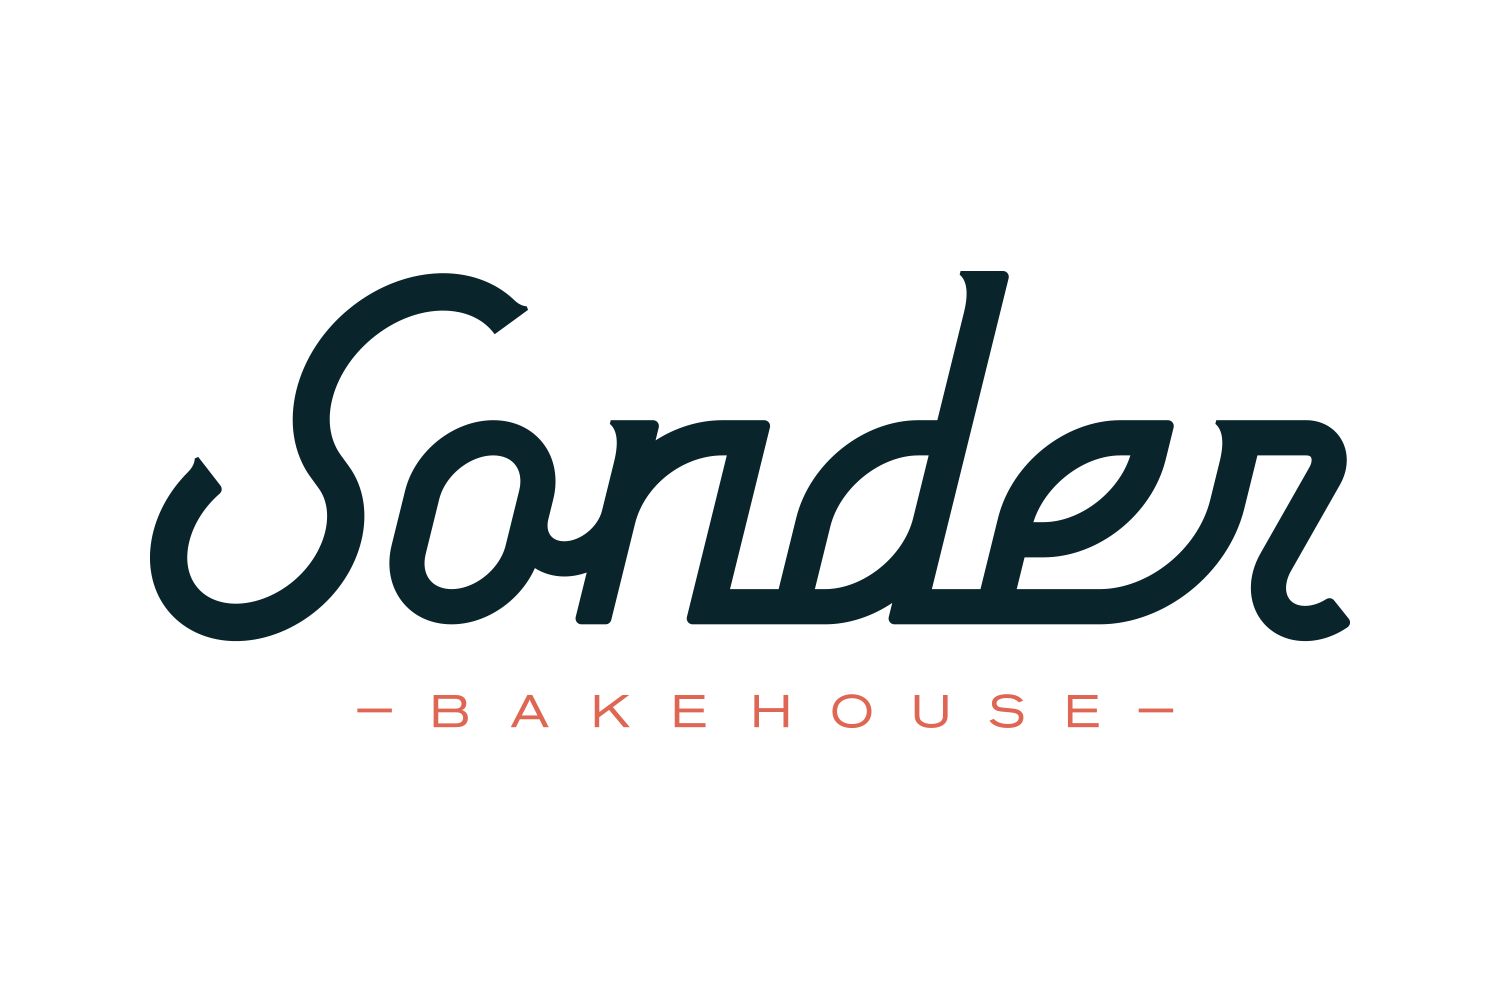 Sonder Bakehouse